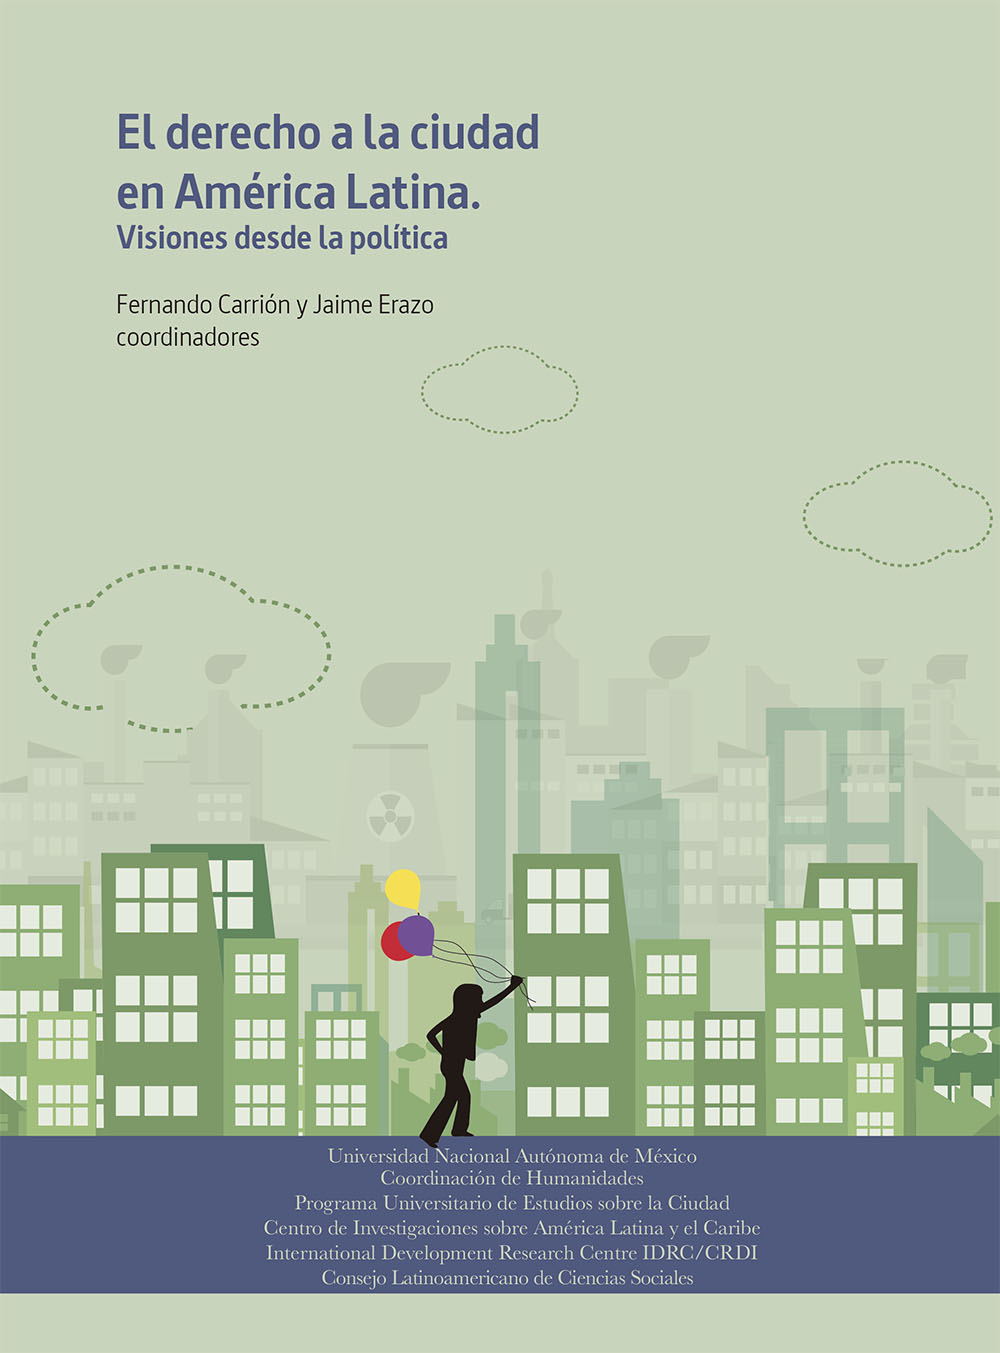 El derecho a la ciudad en América Latina: visiones desde la política<br/>México: Universidad Nacional Autónoma de México. 2016. 450 páginas 